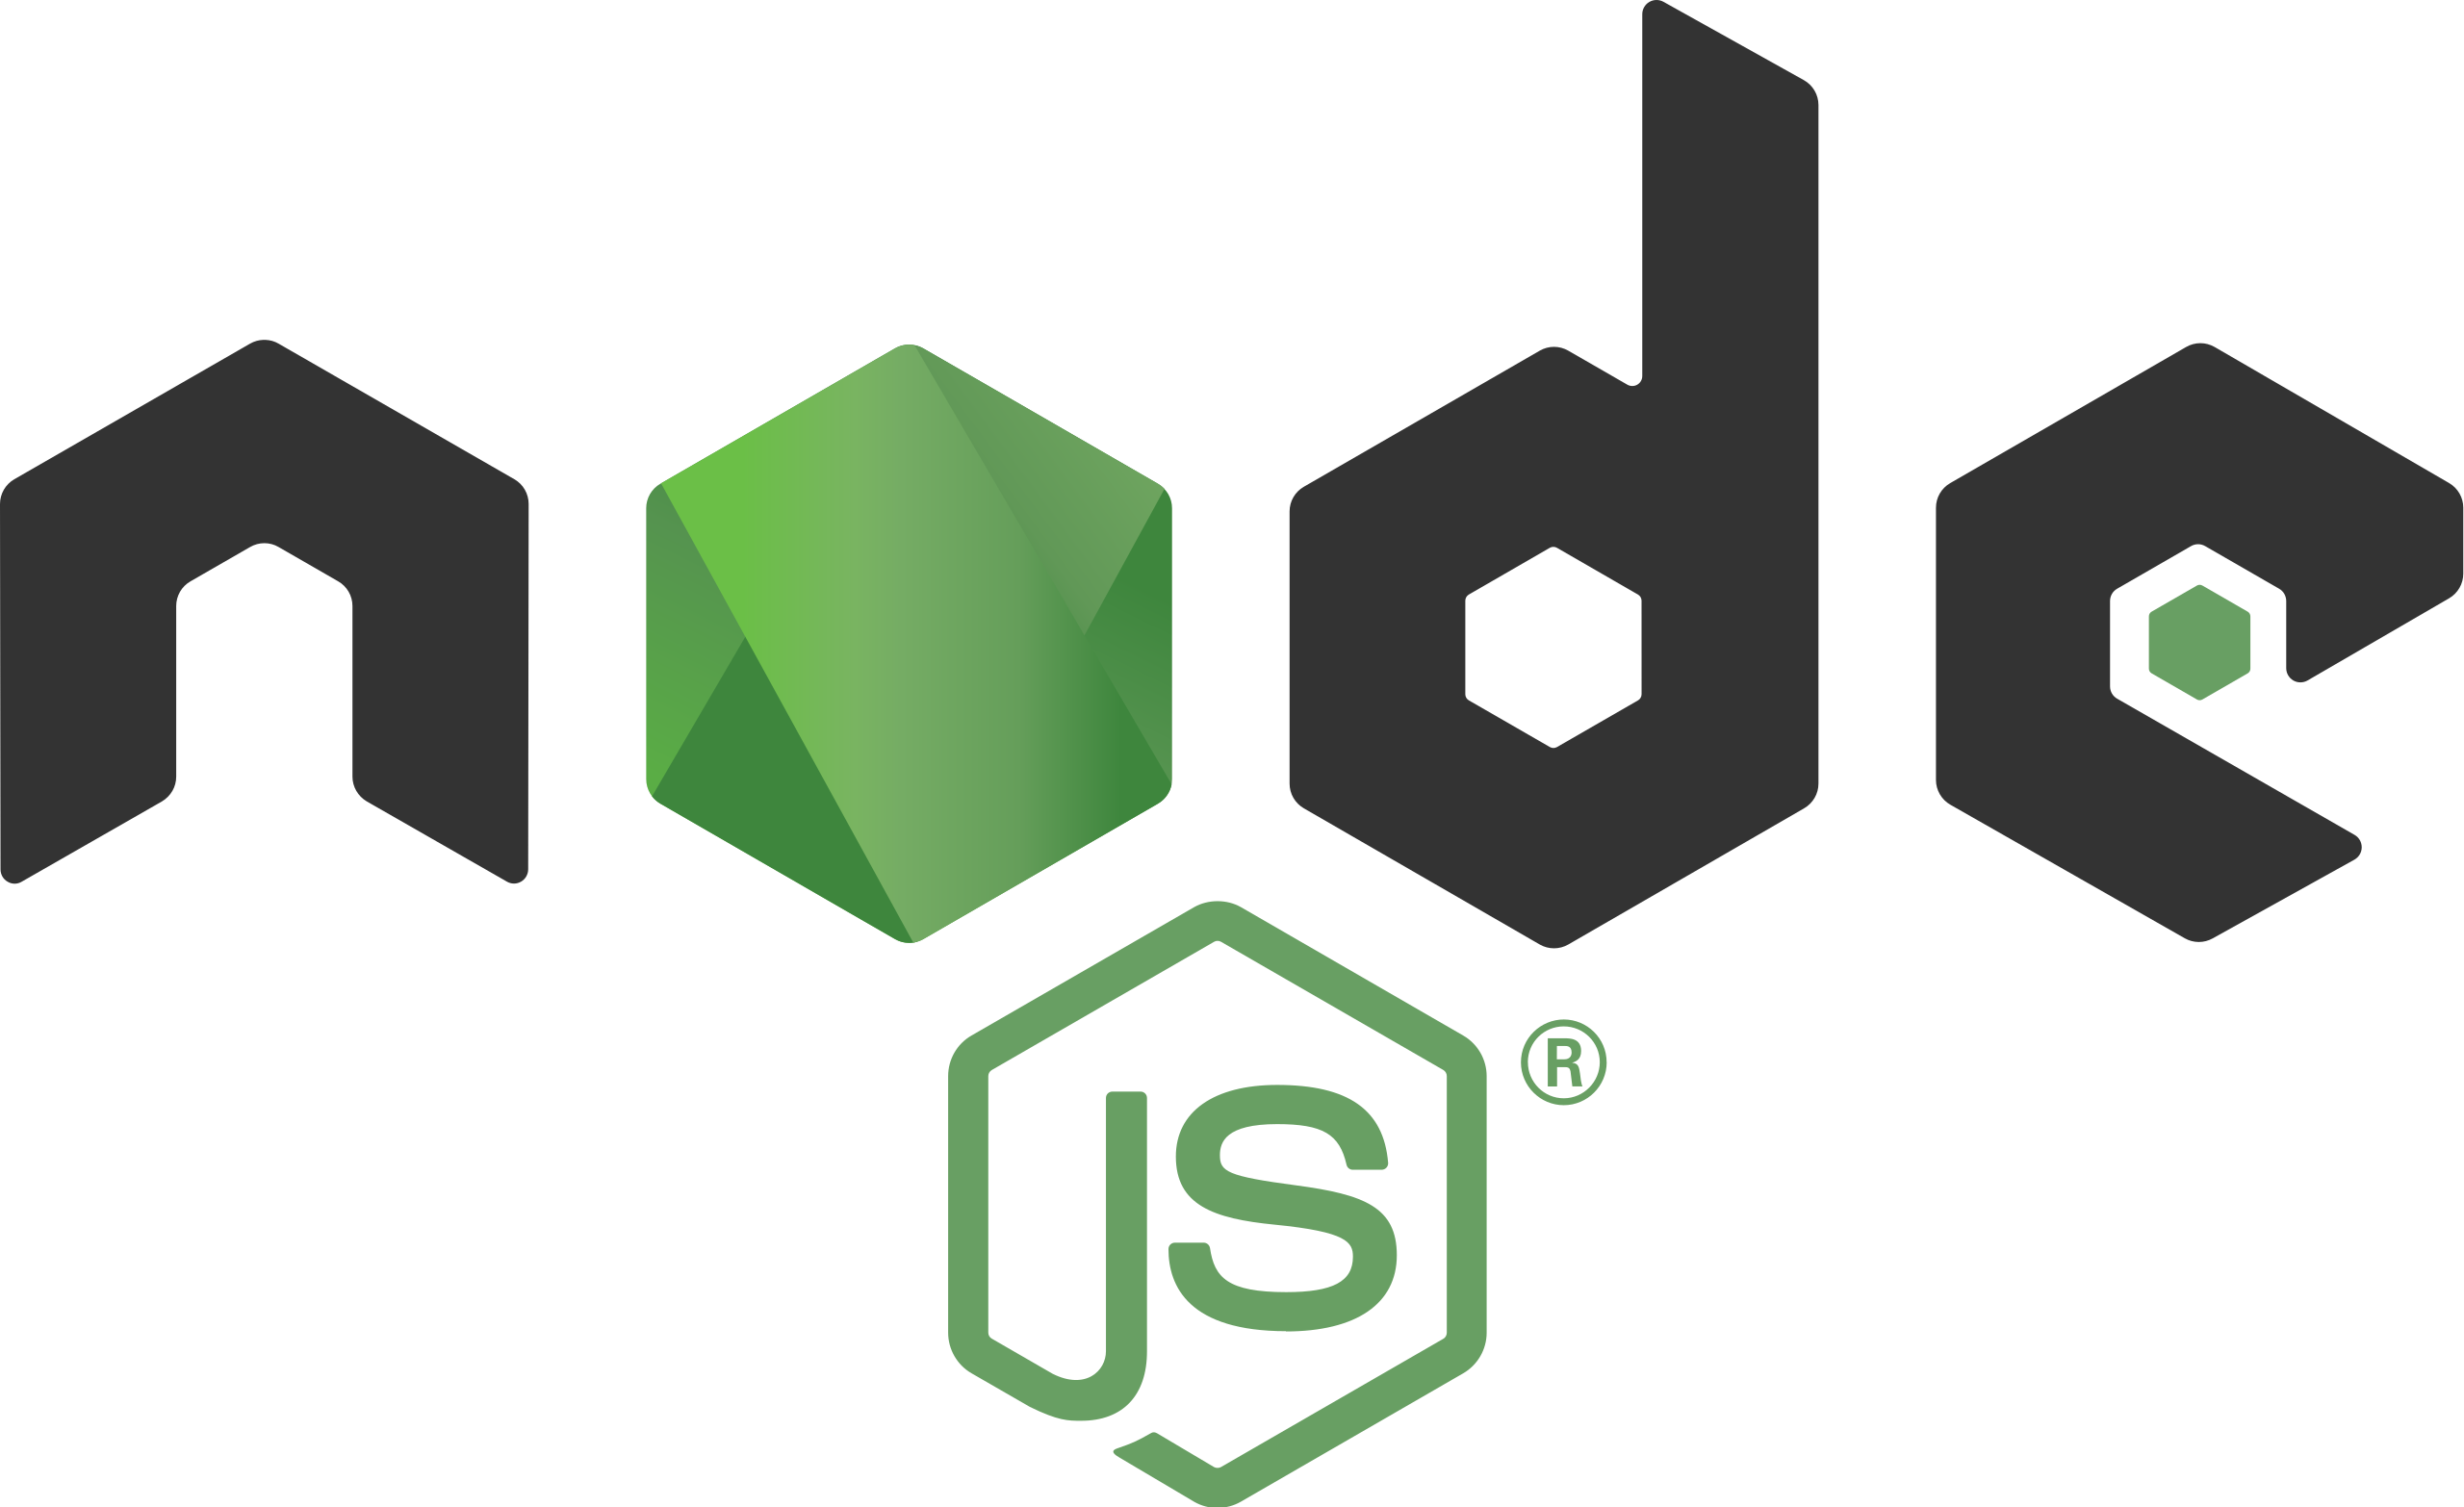 Node js com. Node js иконка. Программирование node js. Node js logo transparent. Node js без фона.